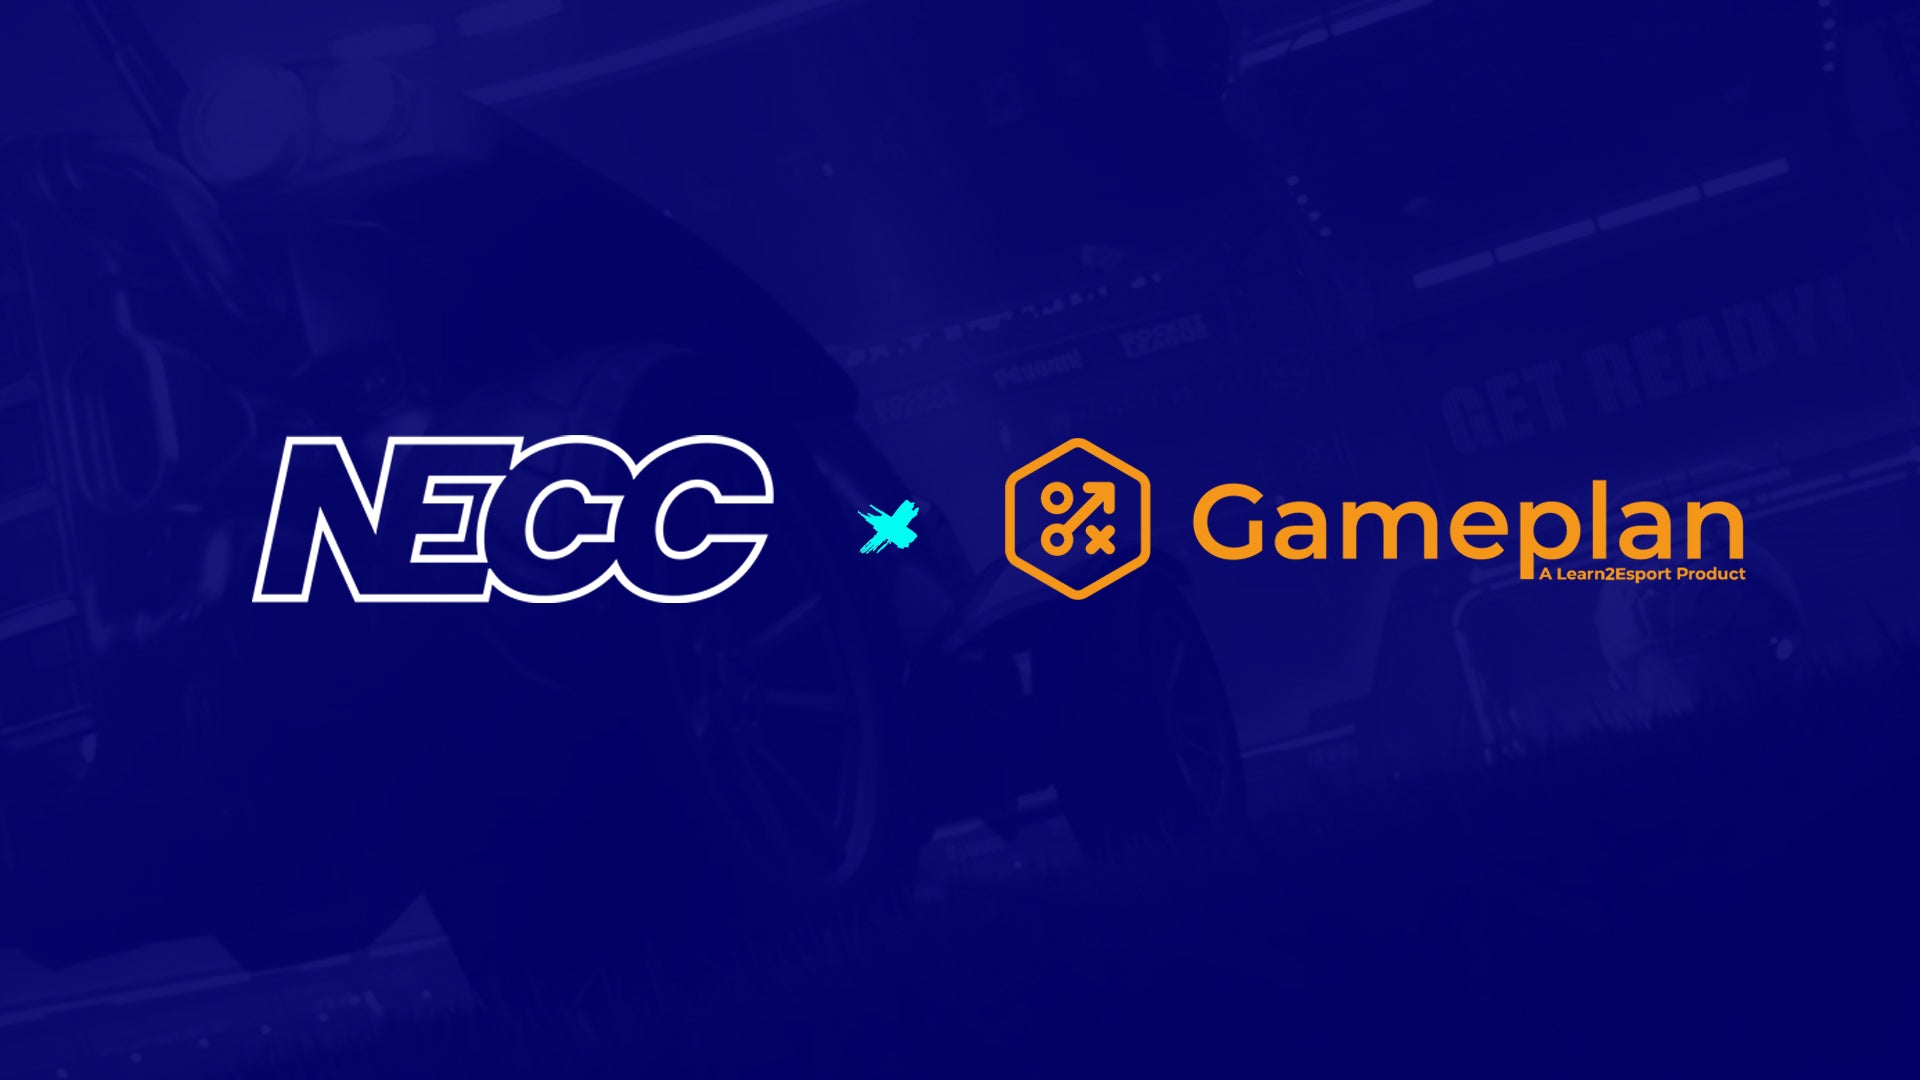 NECC Announces Partnership with Learn2Esport